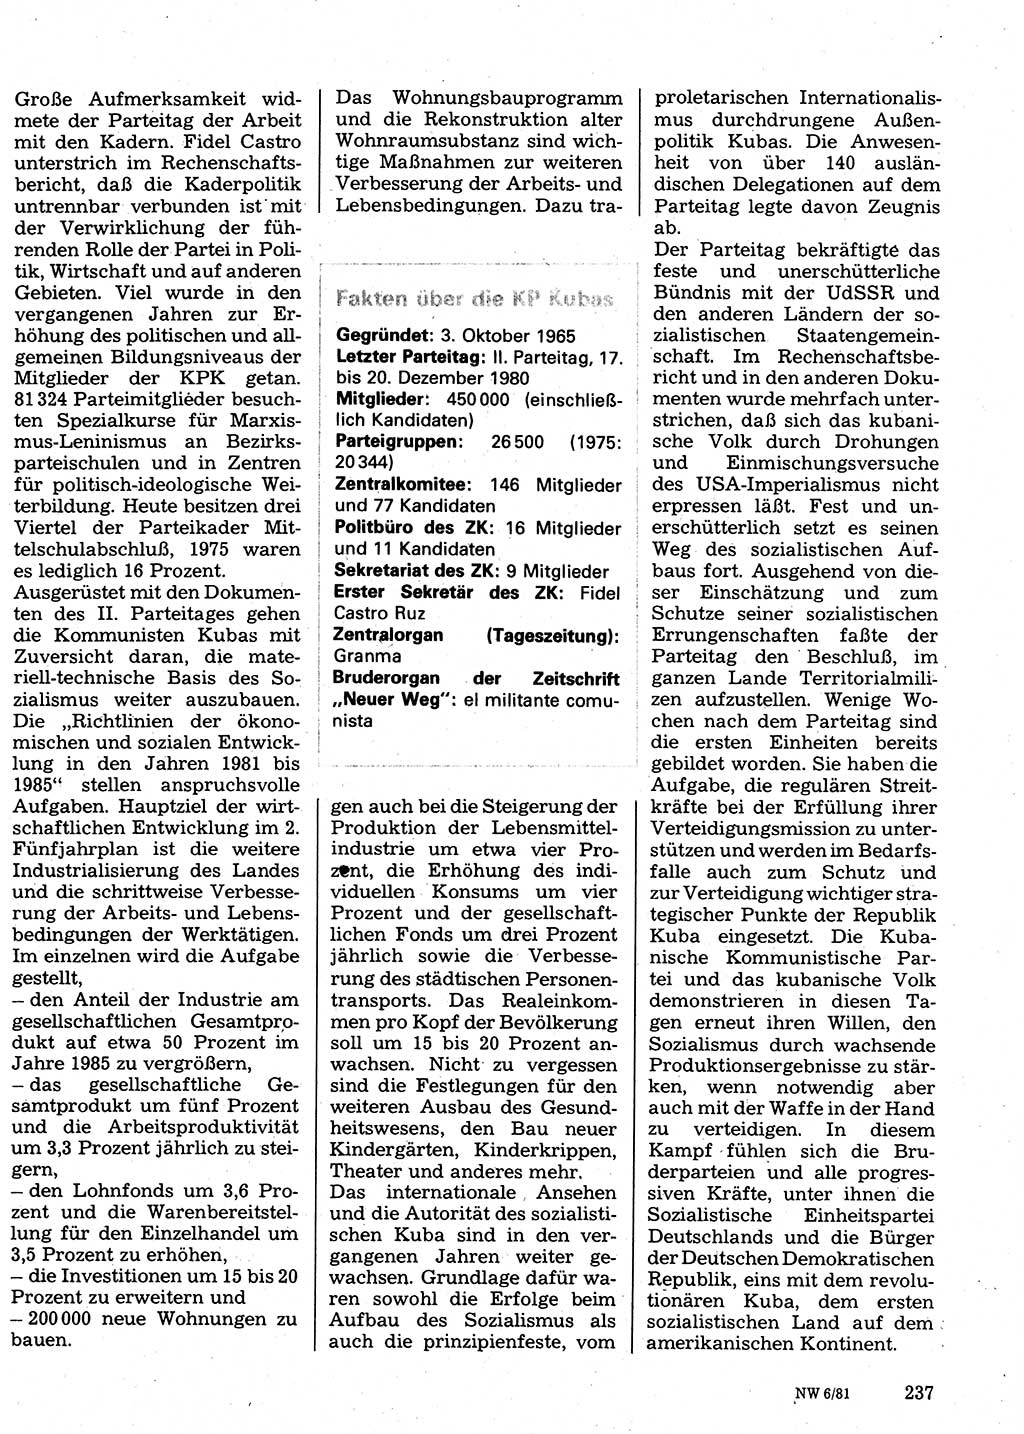 Neuer Weg (NW), Organ des Zentralkomitees (ZK) der SED (Sozialistische Einheitspartei Deutschlands) für Fragen des Parteilebens, 36. Jahrgang [Deutsche Demokratische Republik (DDR)] 1981, Seite 237 (NW ZK SED DDR 1981, S. 237)